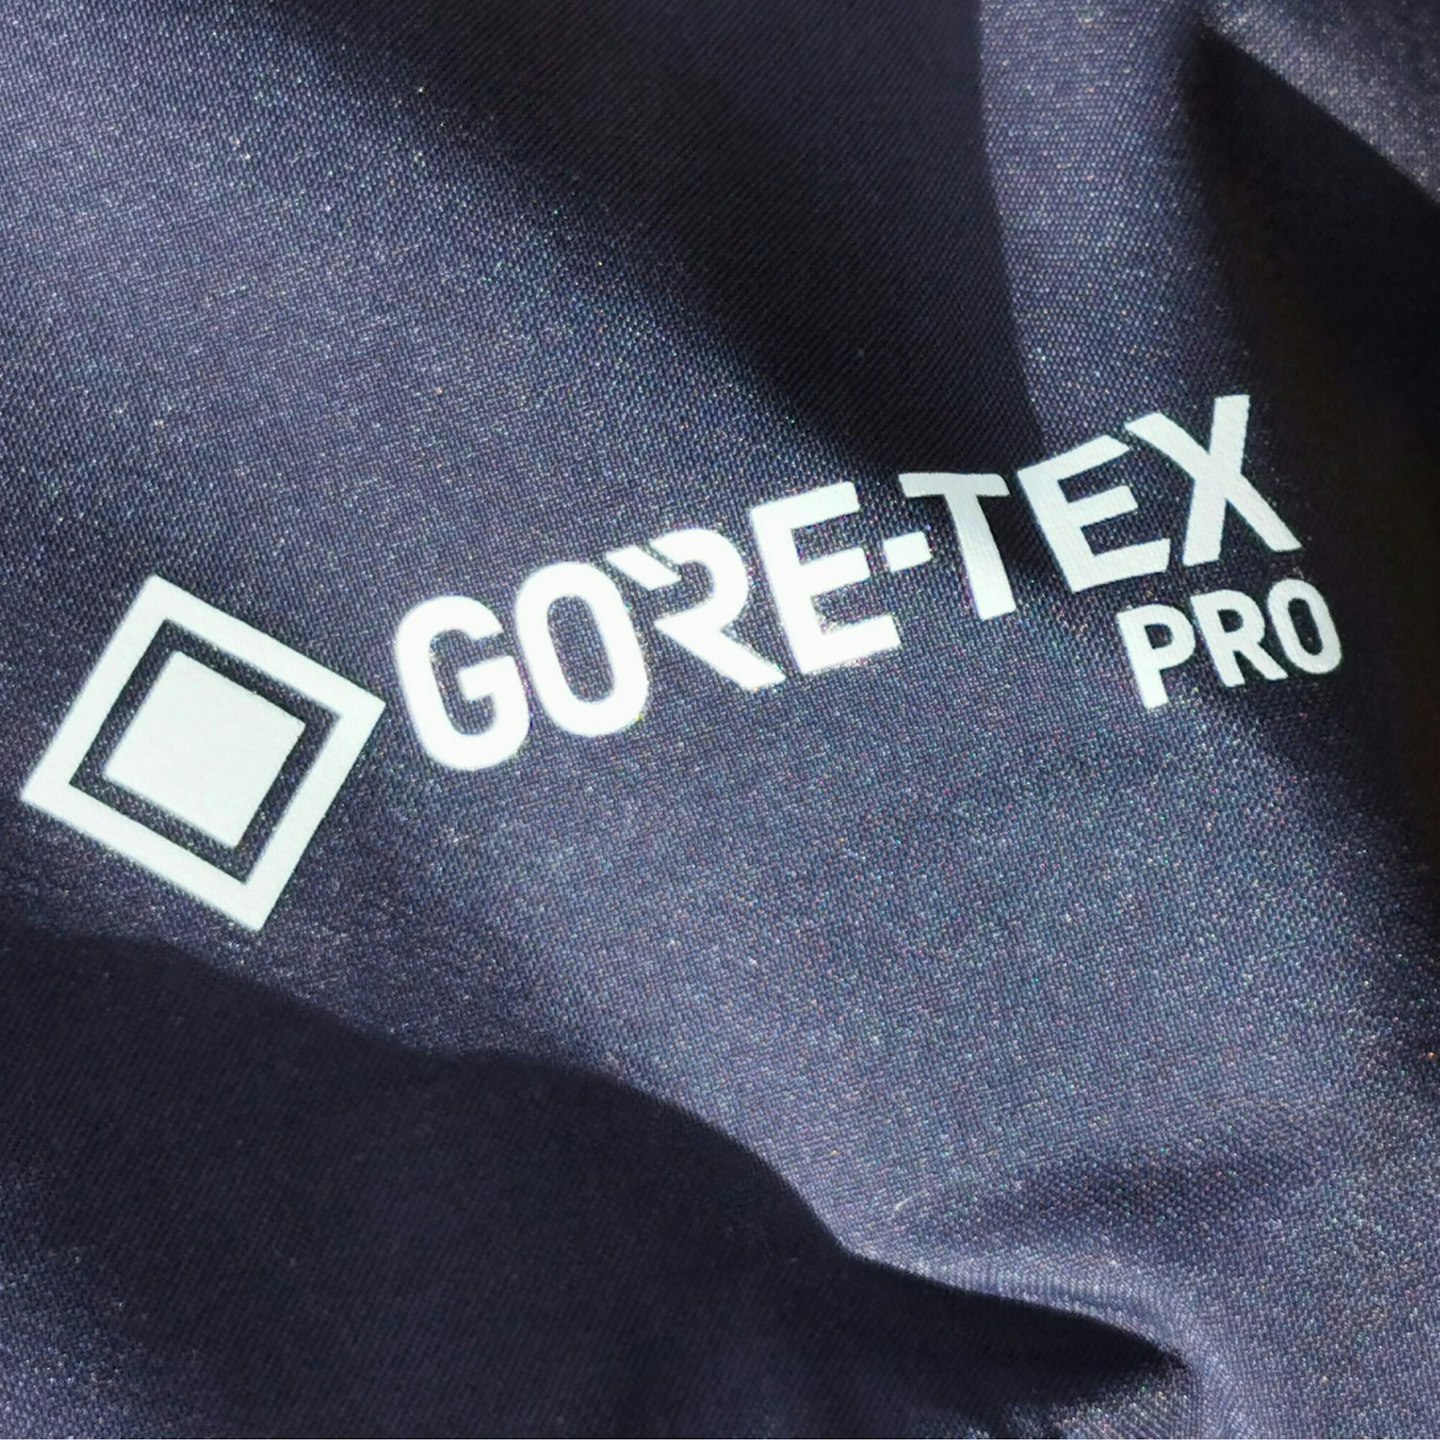 Haglöfs Spitz GTX Pro label